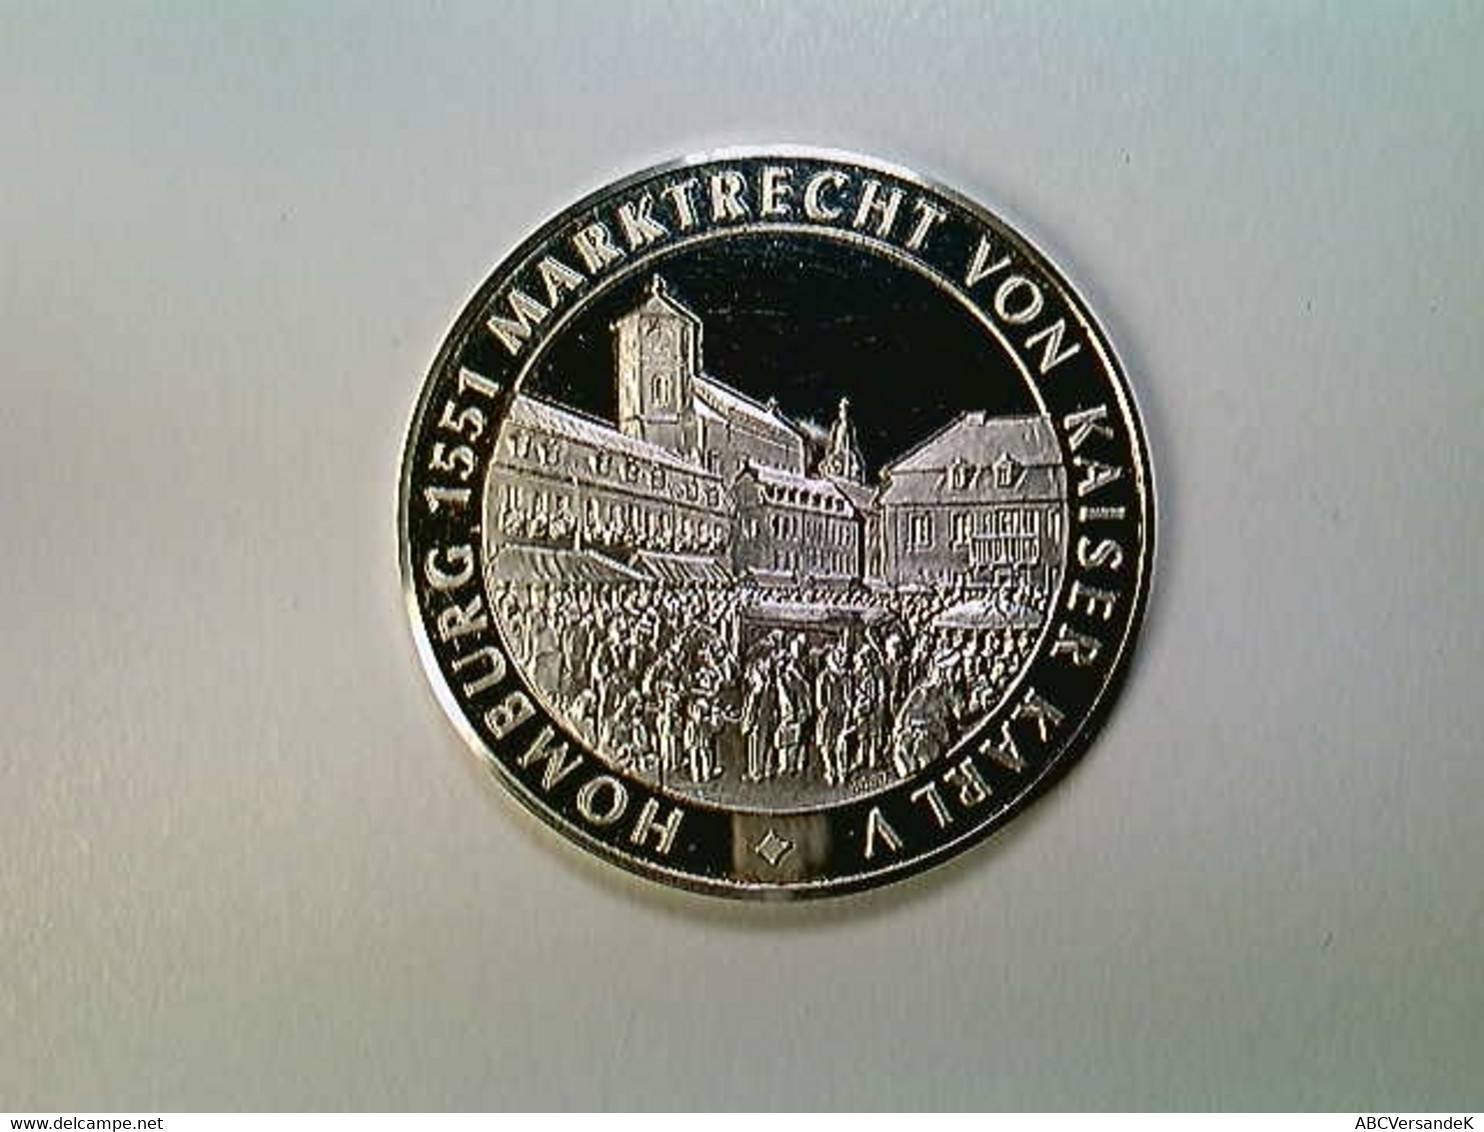 Medaille Homburg 650 Jahre Stadtrecht 1330-1980, Silber 1000 - Numismatics